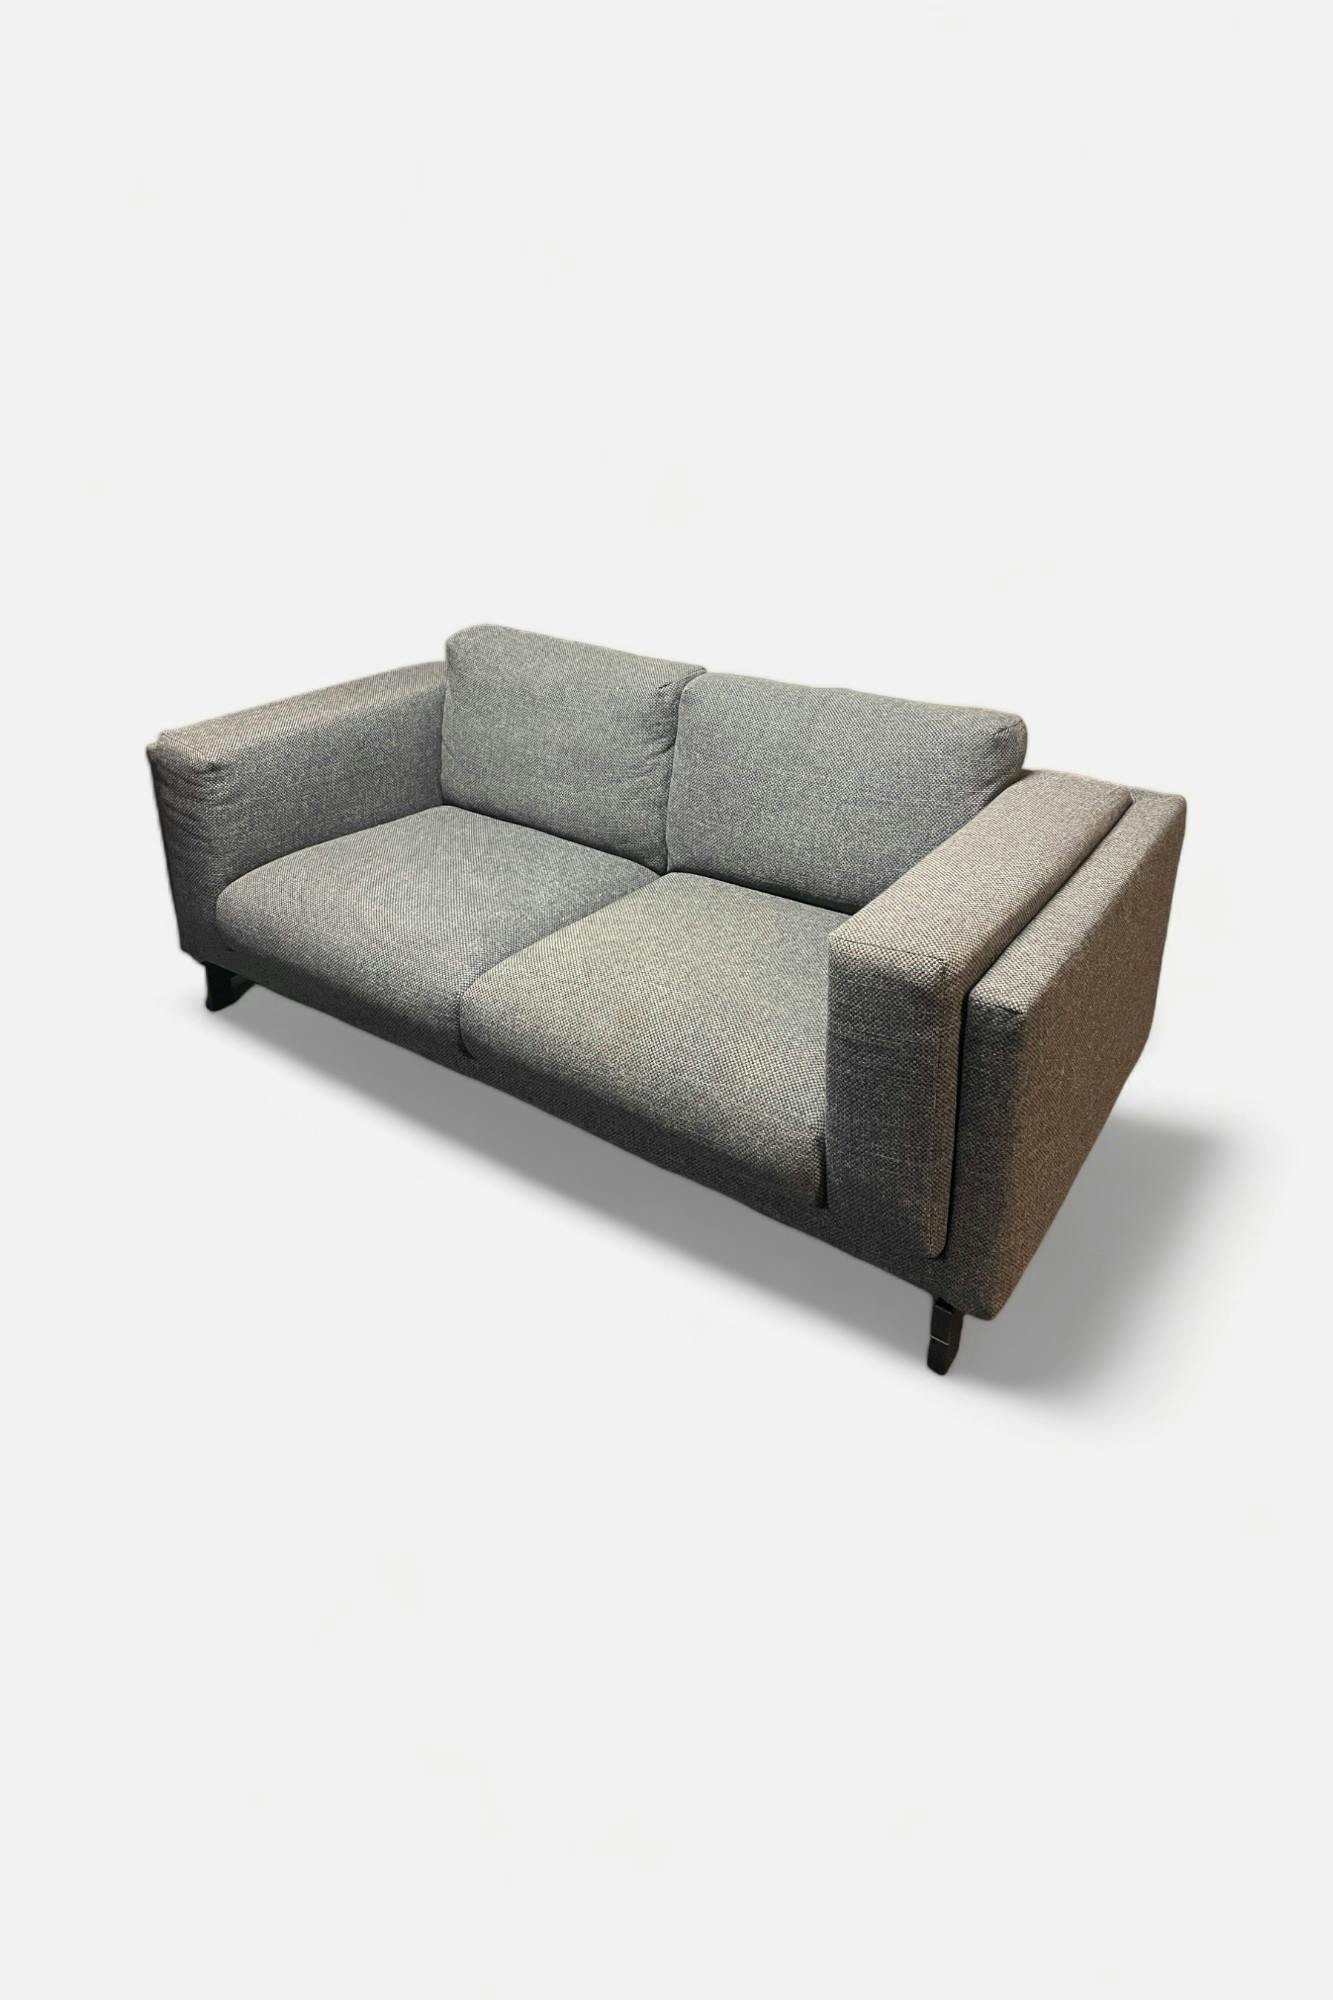 Canapé gris 2 personnes - Relieve Furniture